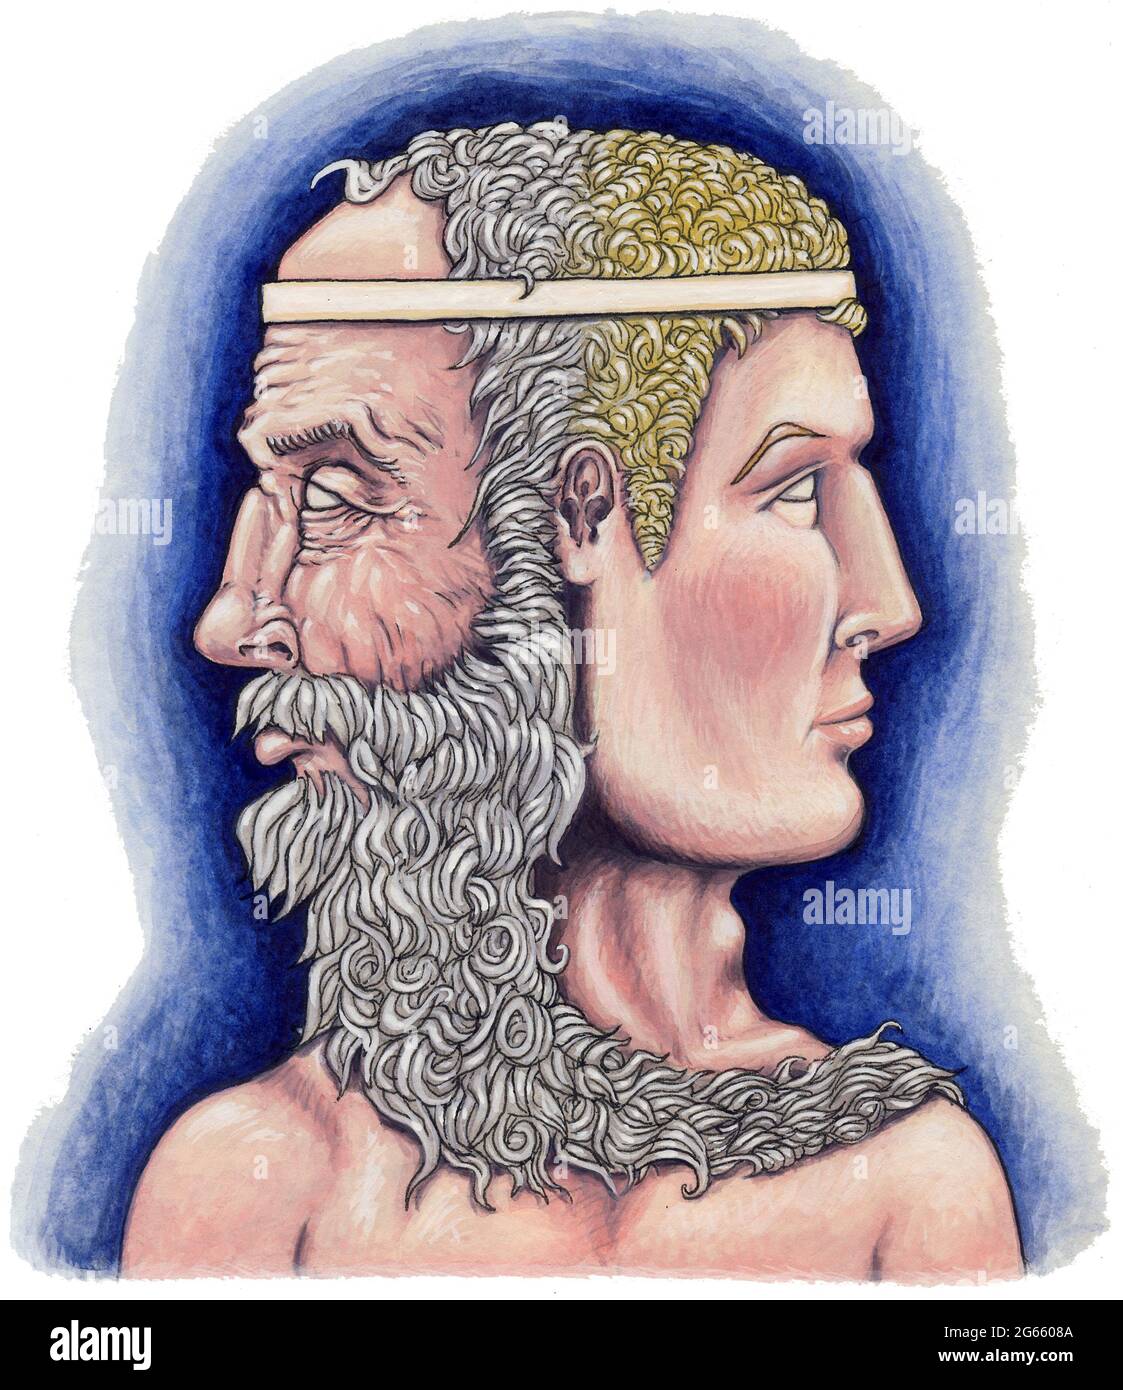 Kunstwerk Illustration des römischen gottes Janus mit zwei Gesichtern, einem jungen, einem alten Janus, stellte Zeit, Übergänge, Dualität, Beginn und Ende des Krieges dar Stockfoto